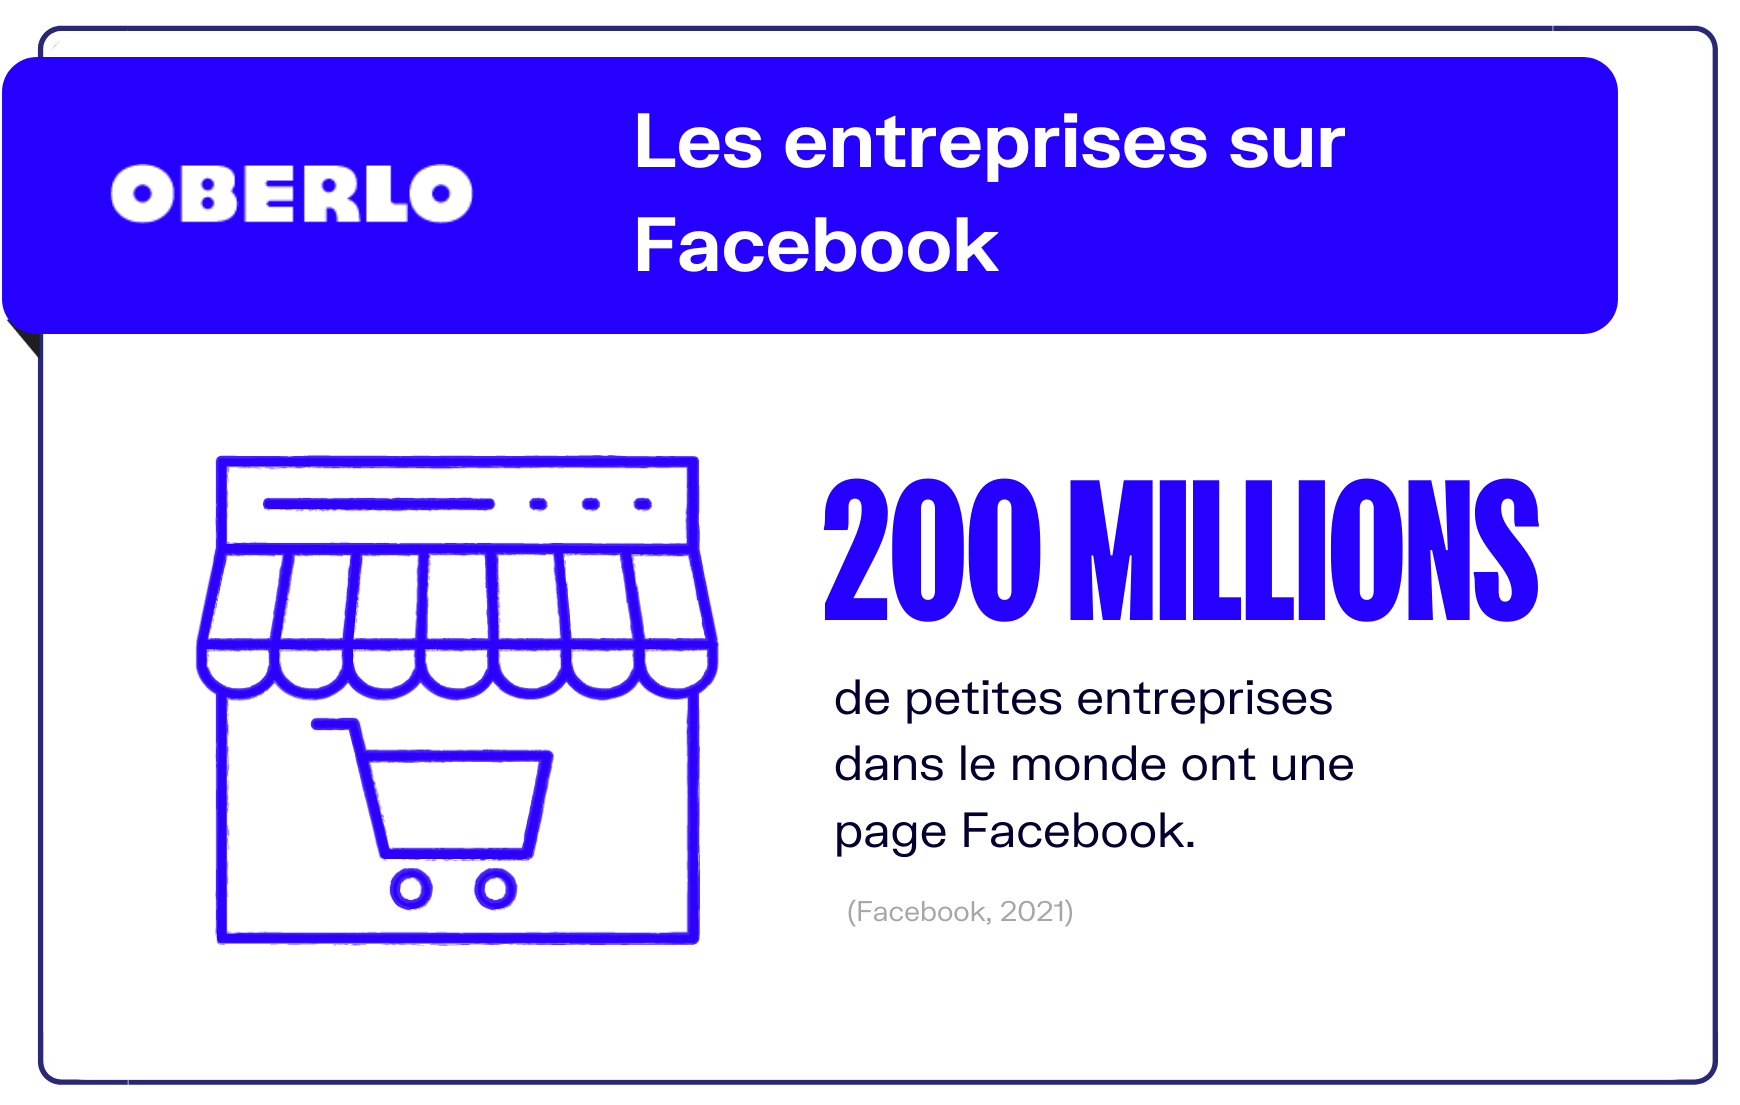 كم عدد الشركات على الفيسبوك